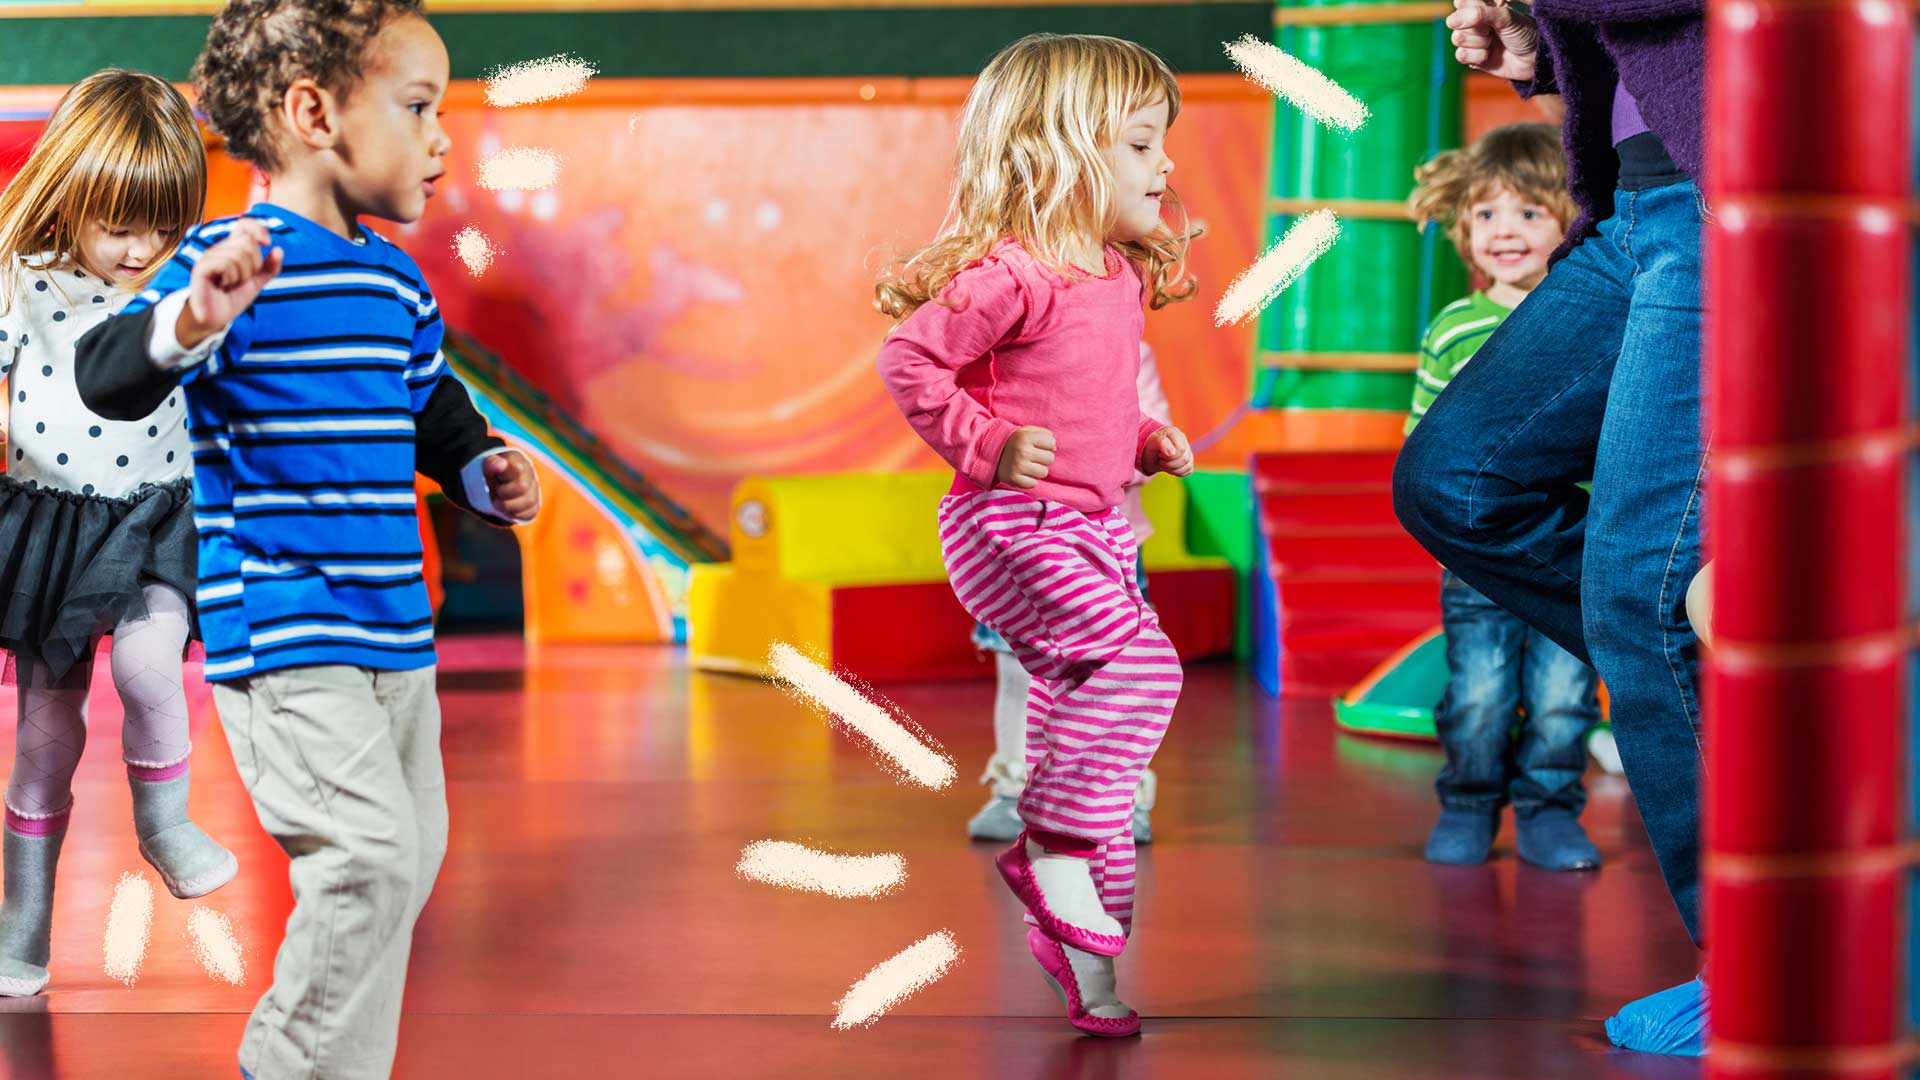 No centro da foto, uma menina dança enquanto outras crianças observam